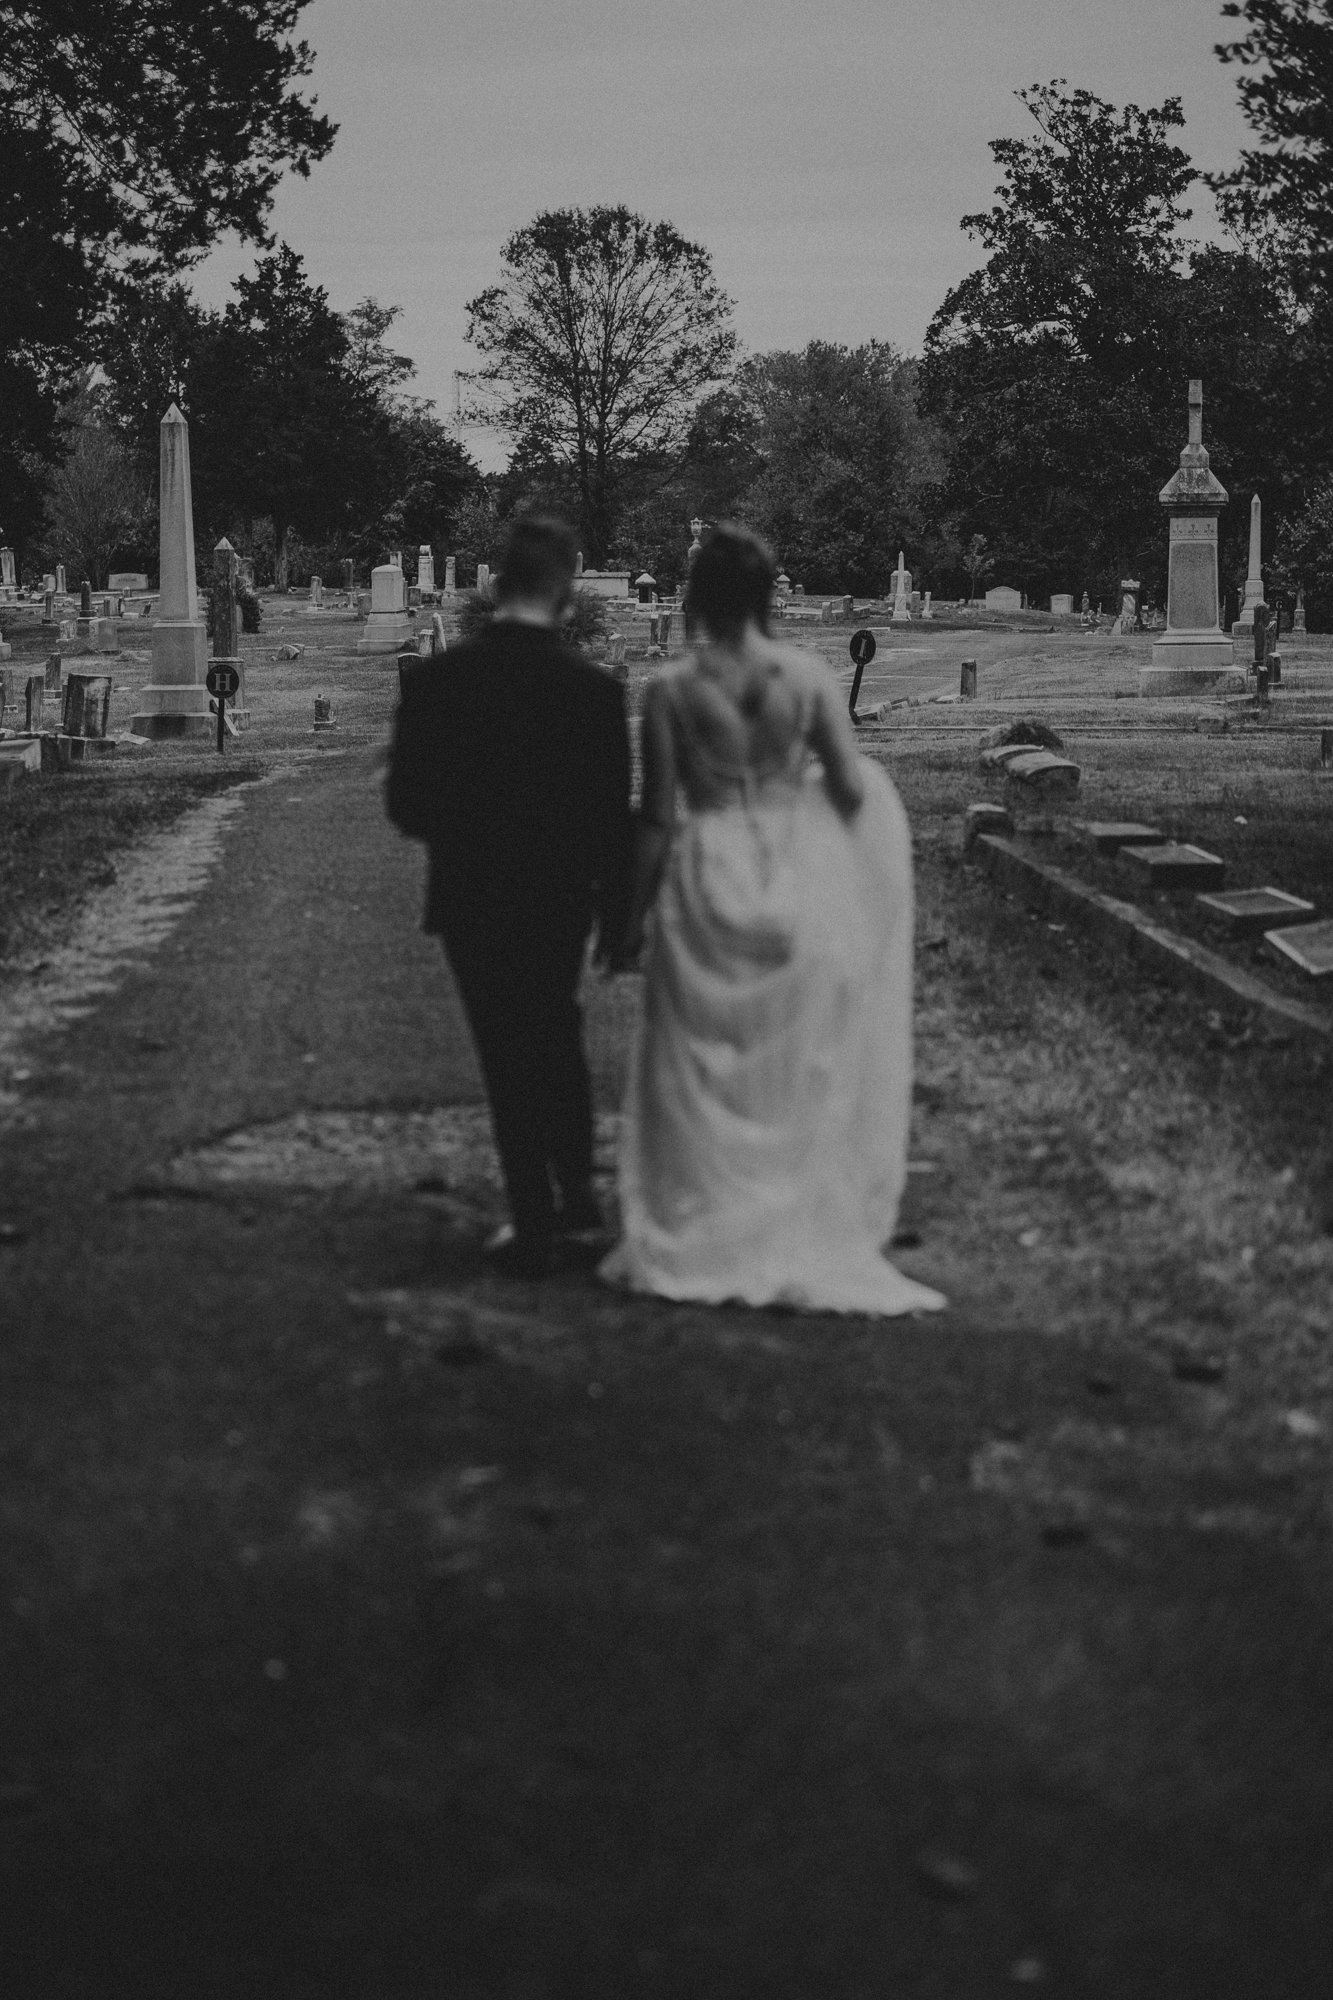 Cemetery Wedding in Durham, NC